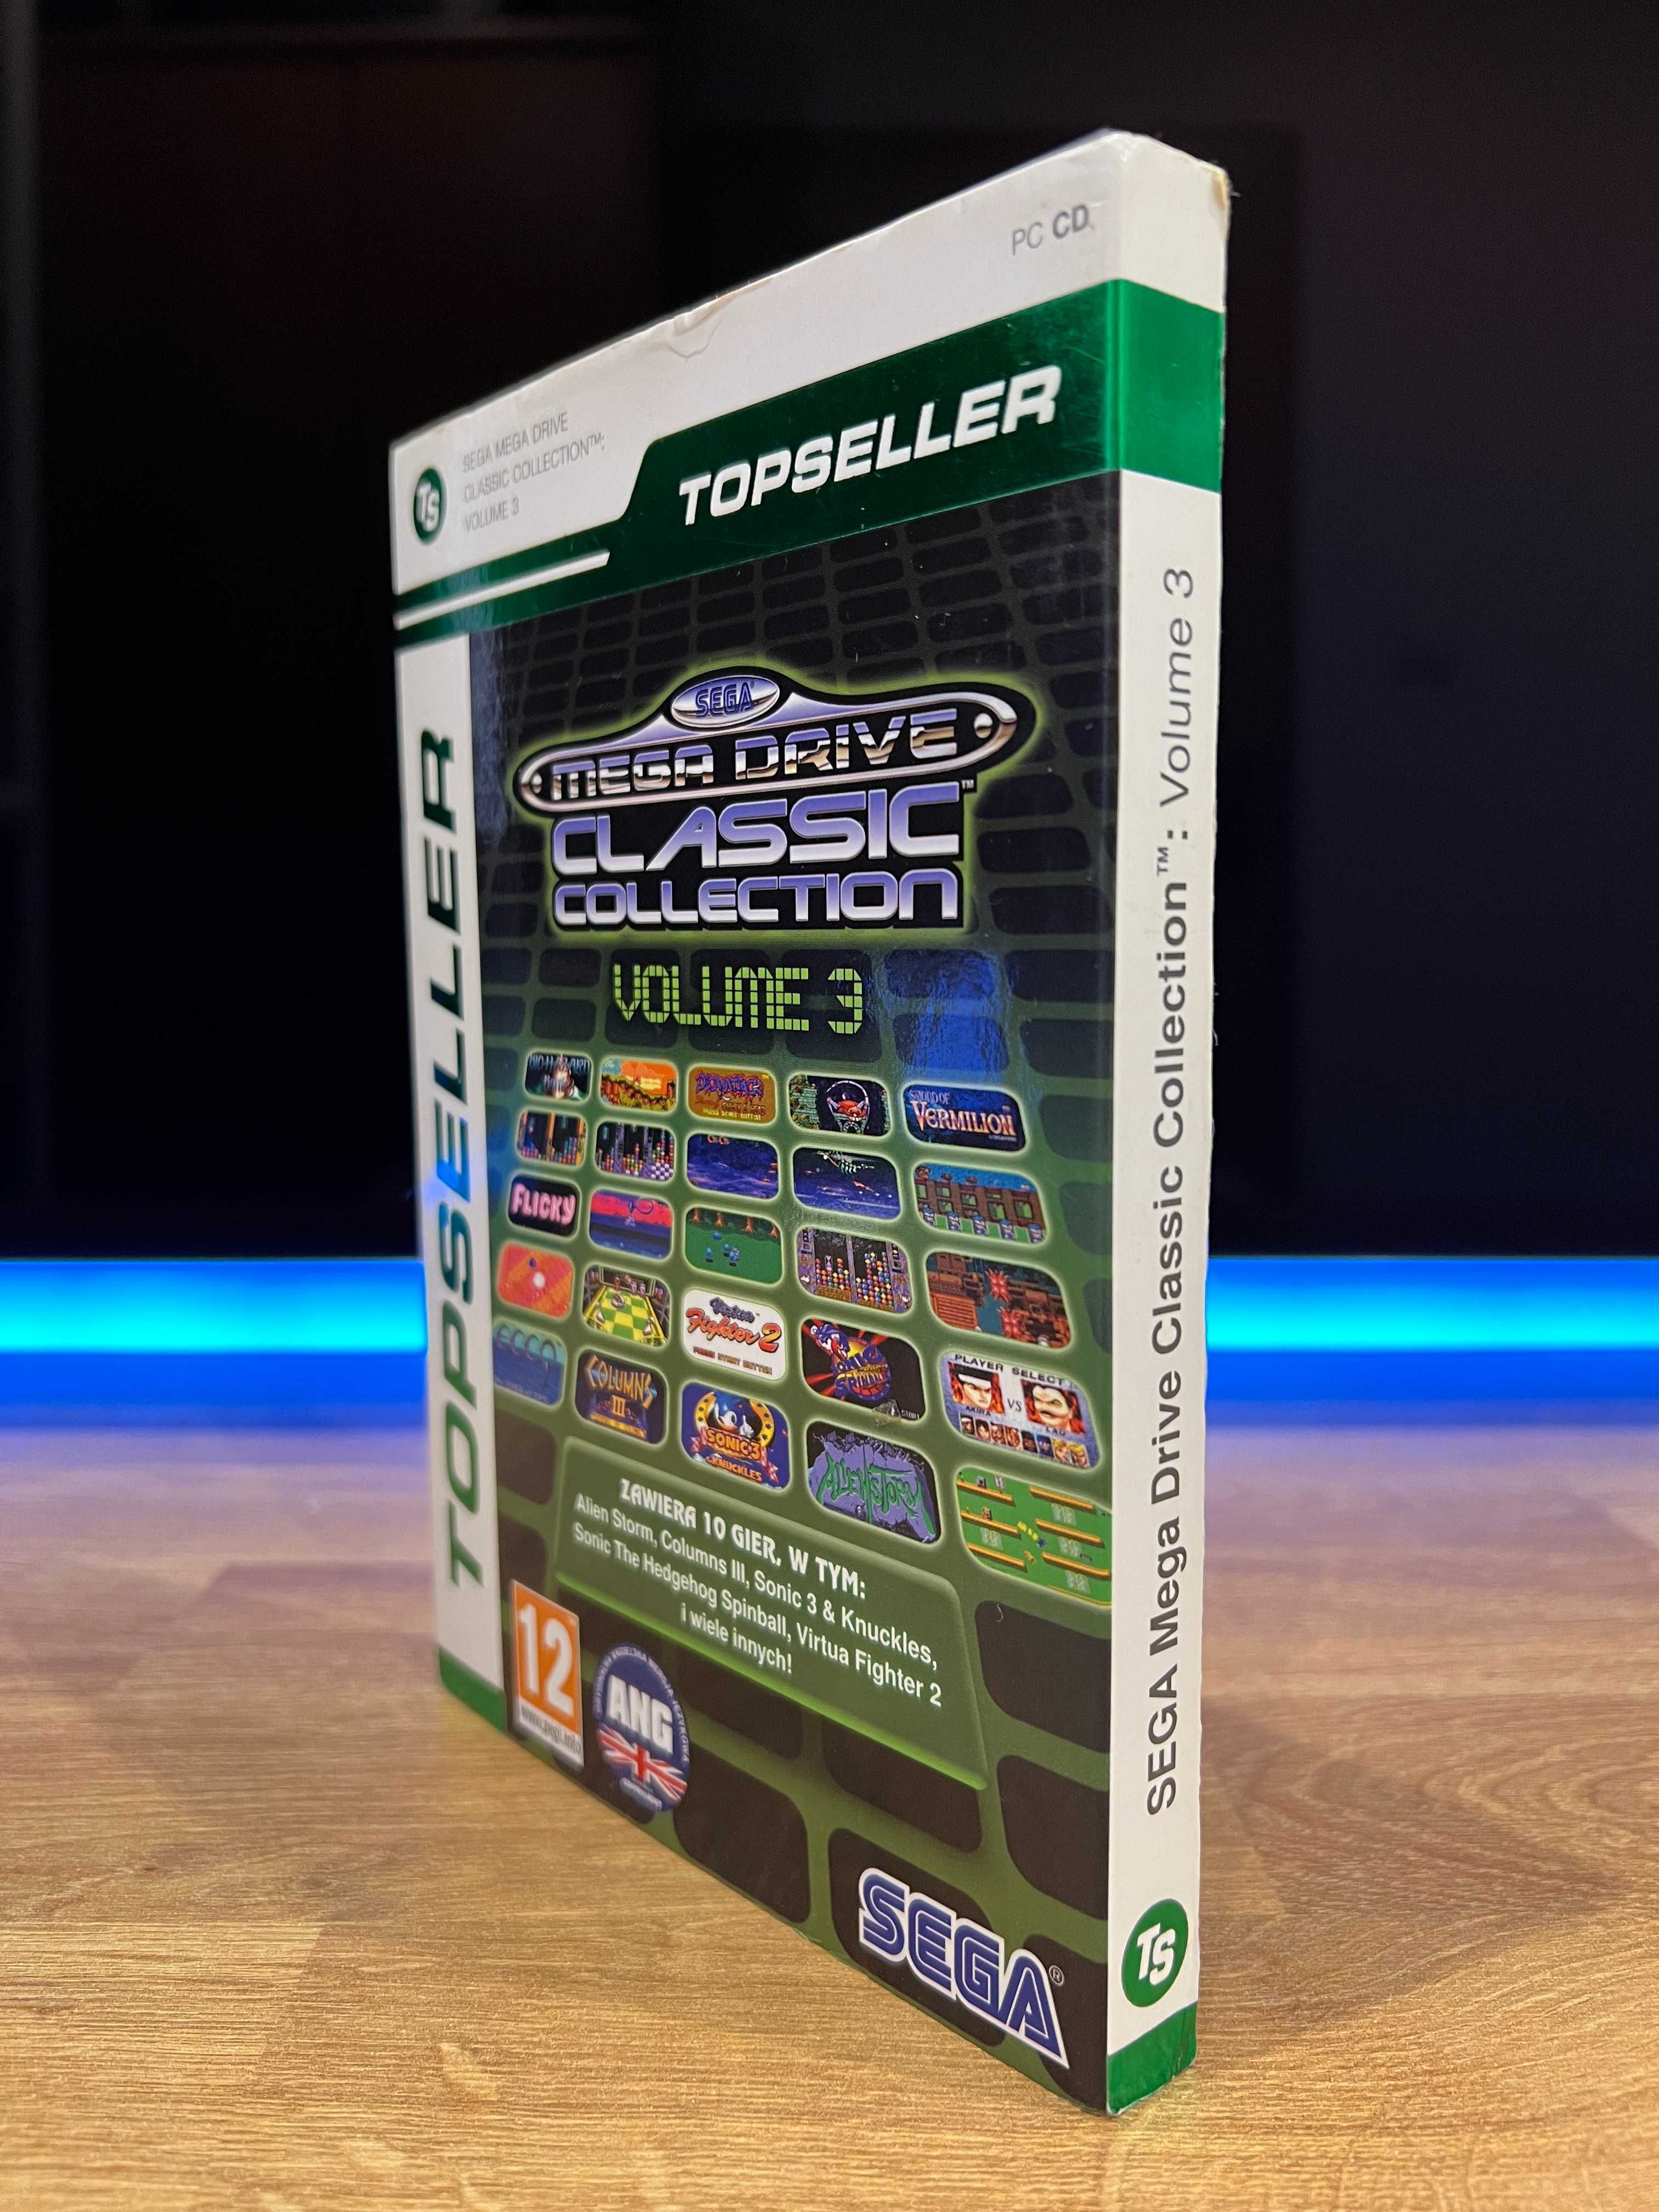 Sega Mega Drive Classic Collection Volume 3 (PC PL) DVD BOX TOPSELLER